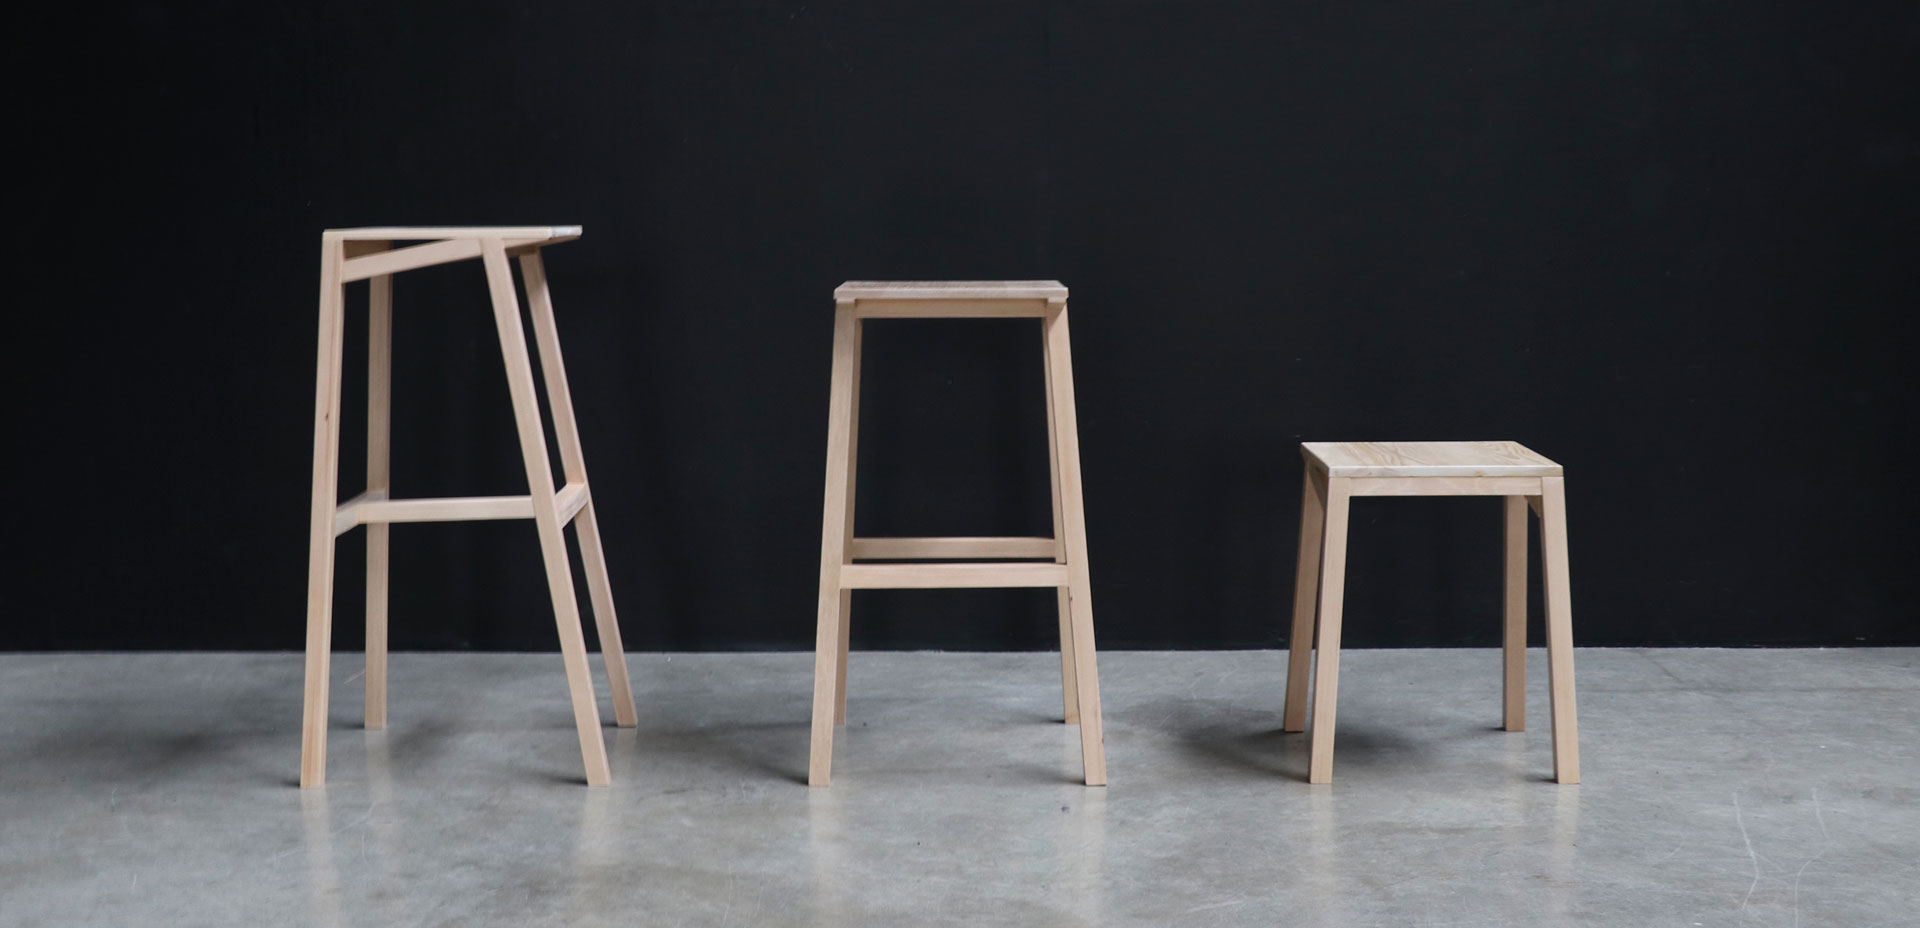 Studio lightweight stool